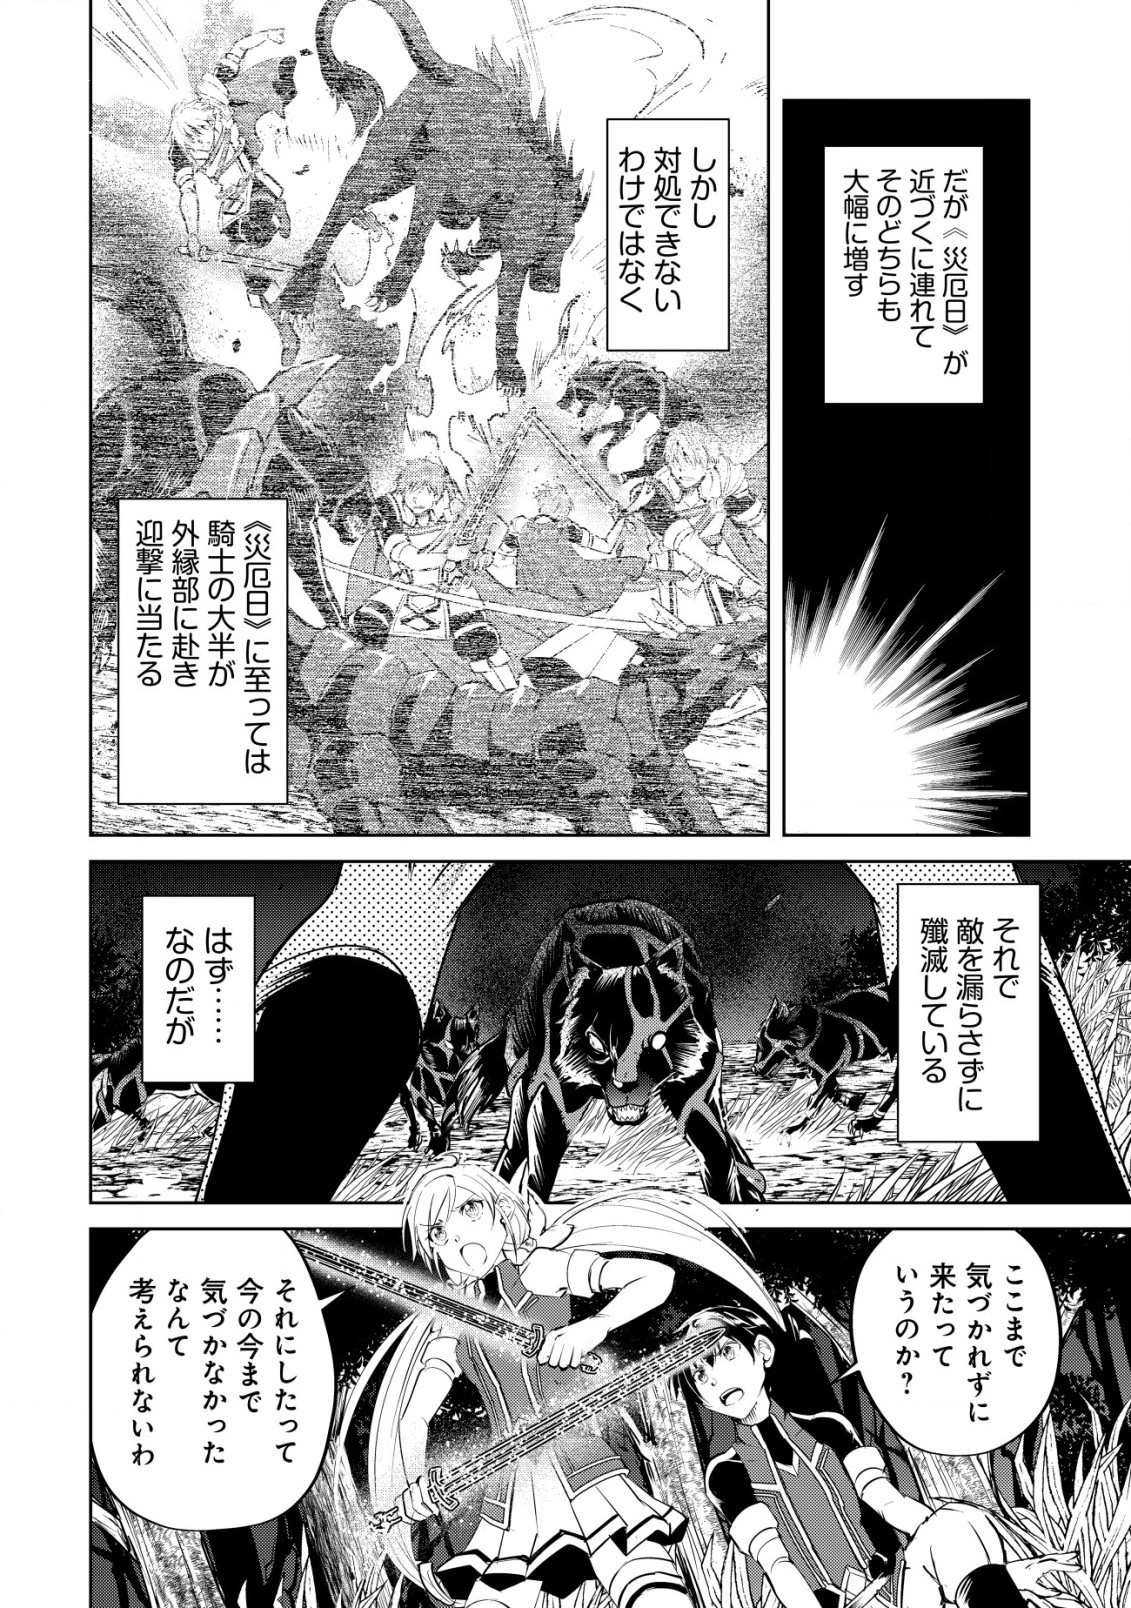 Ten to Chi to Hazama no Sekai Yelatium - Chapter 5.1 - Page 2